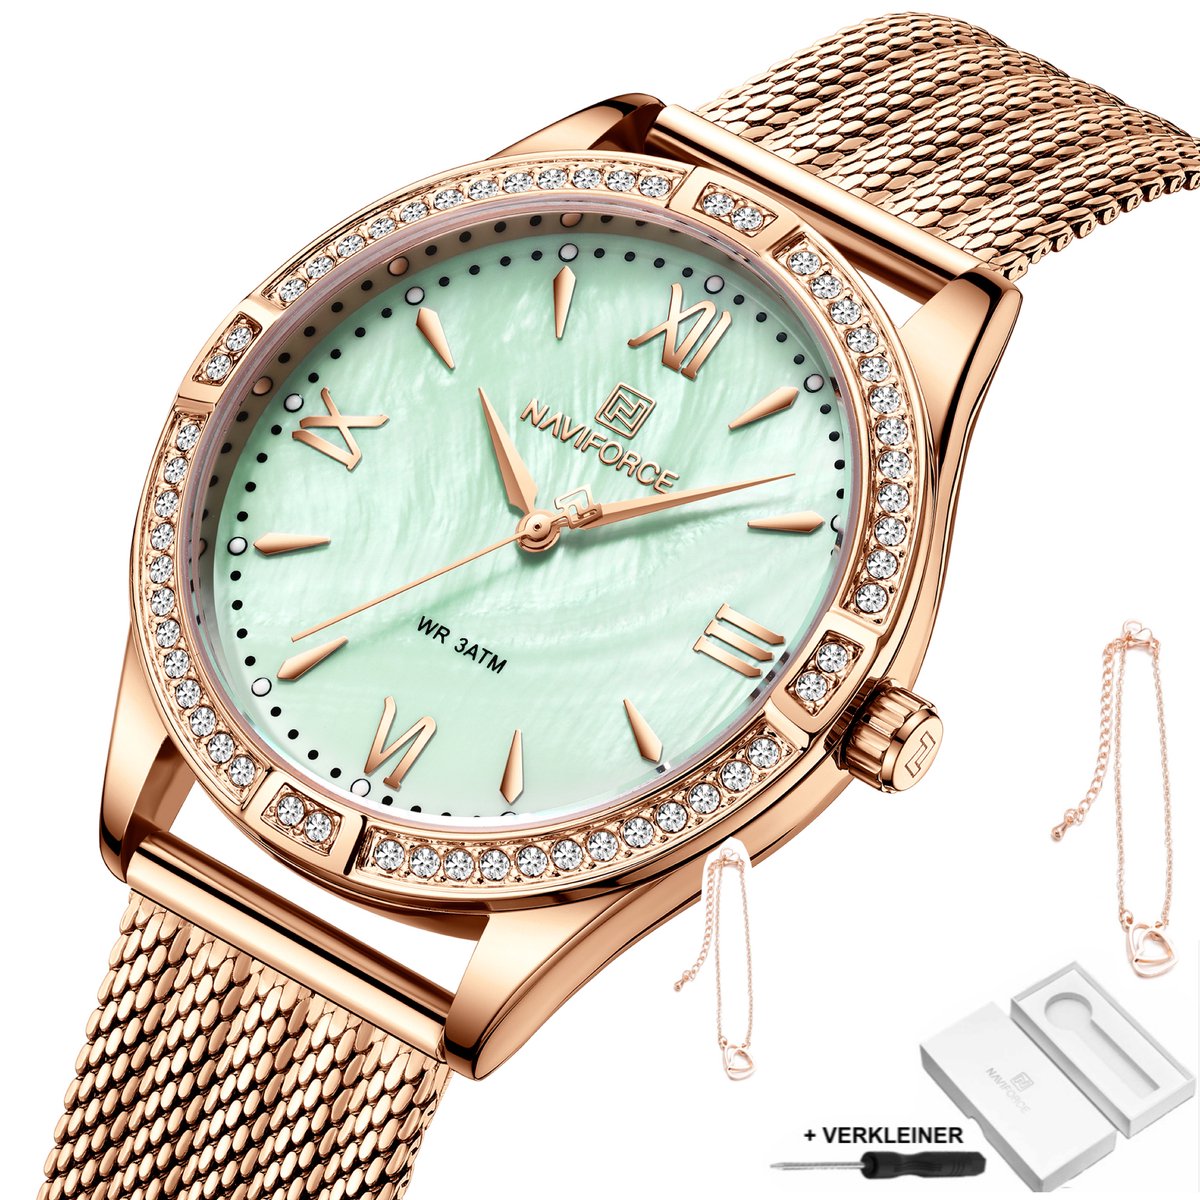 Naviforce - Horloge Dames - Cadeau voor Vrouw - 37 mm - Rosé Groen